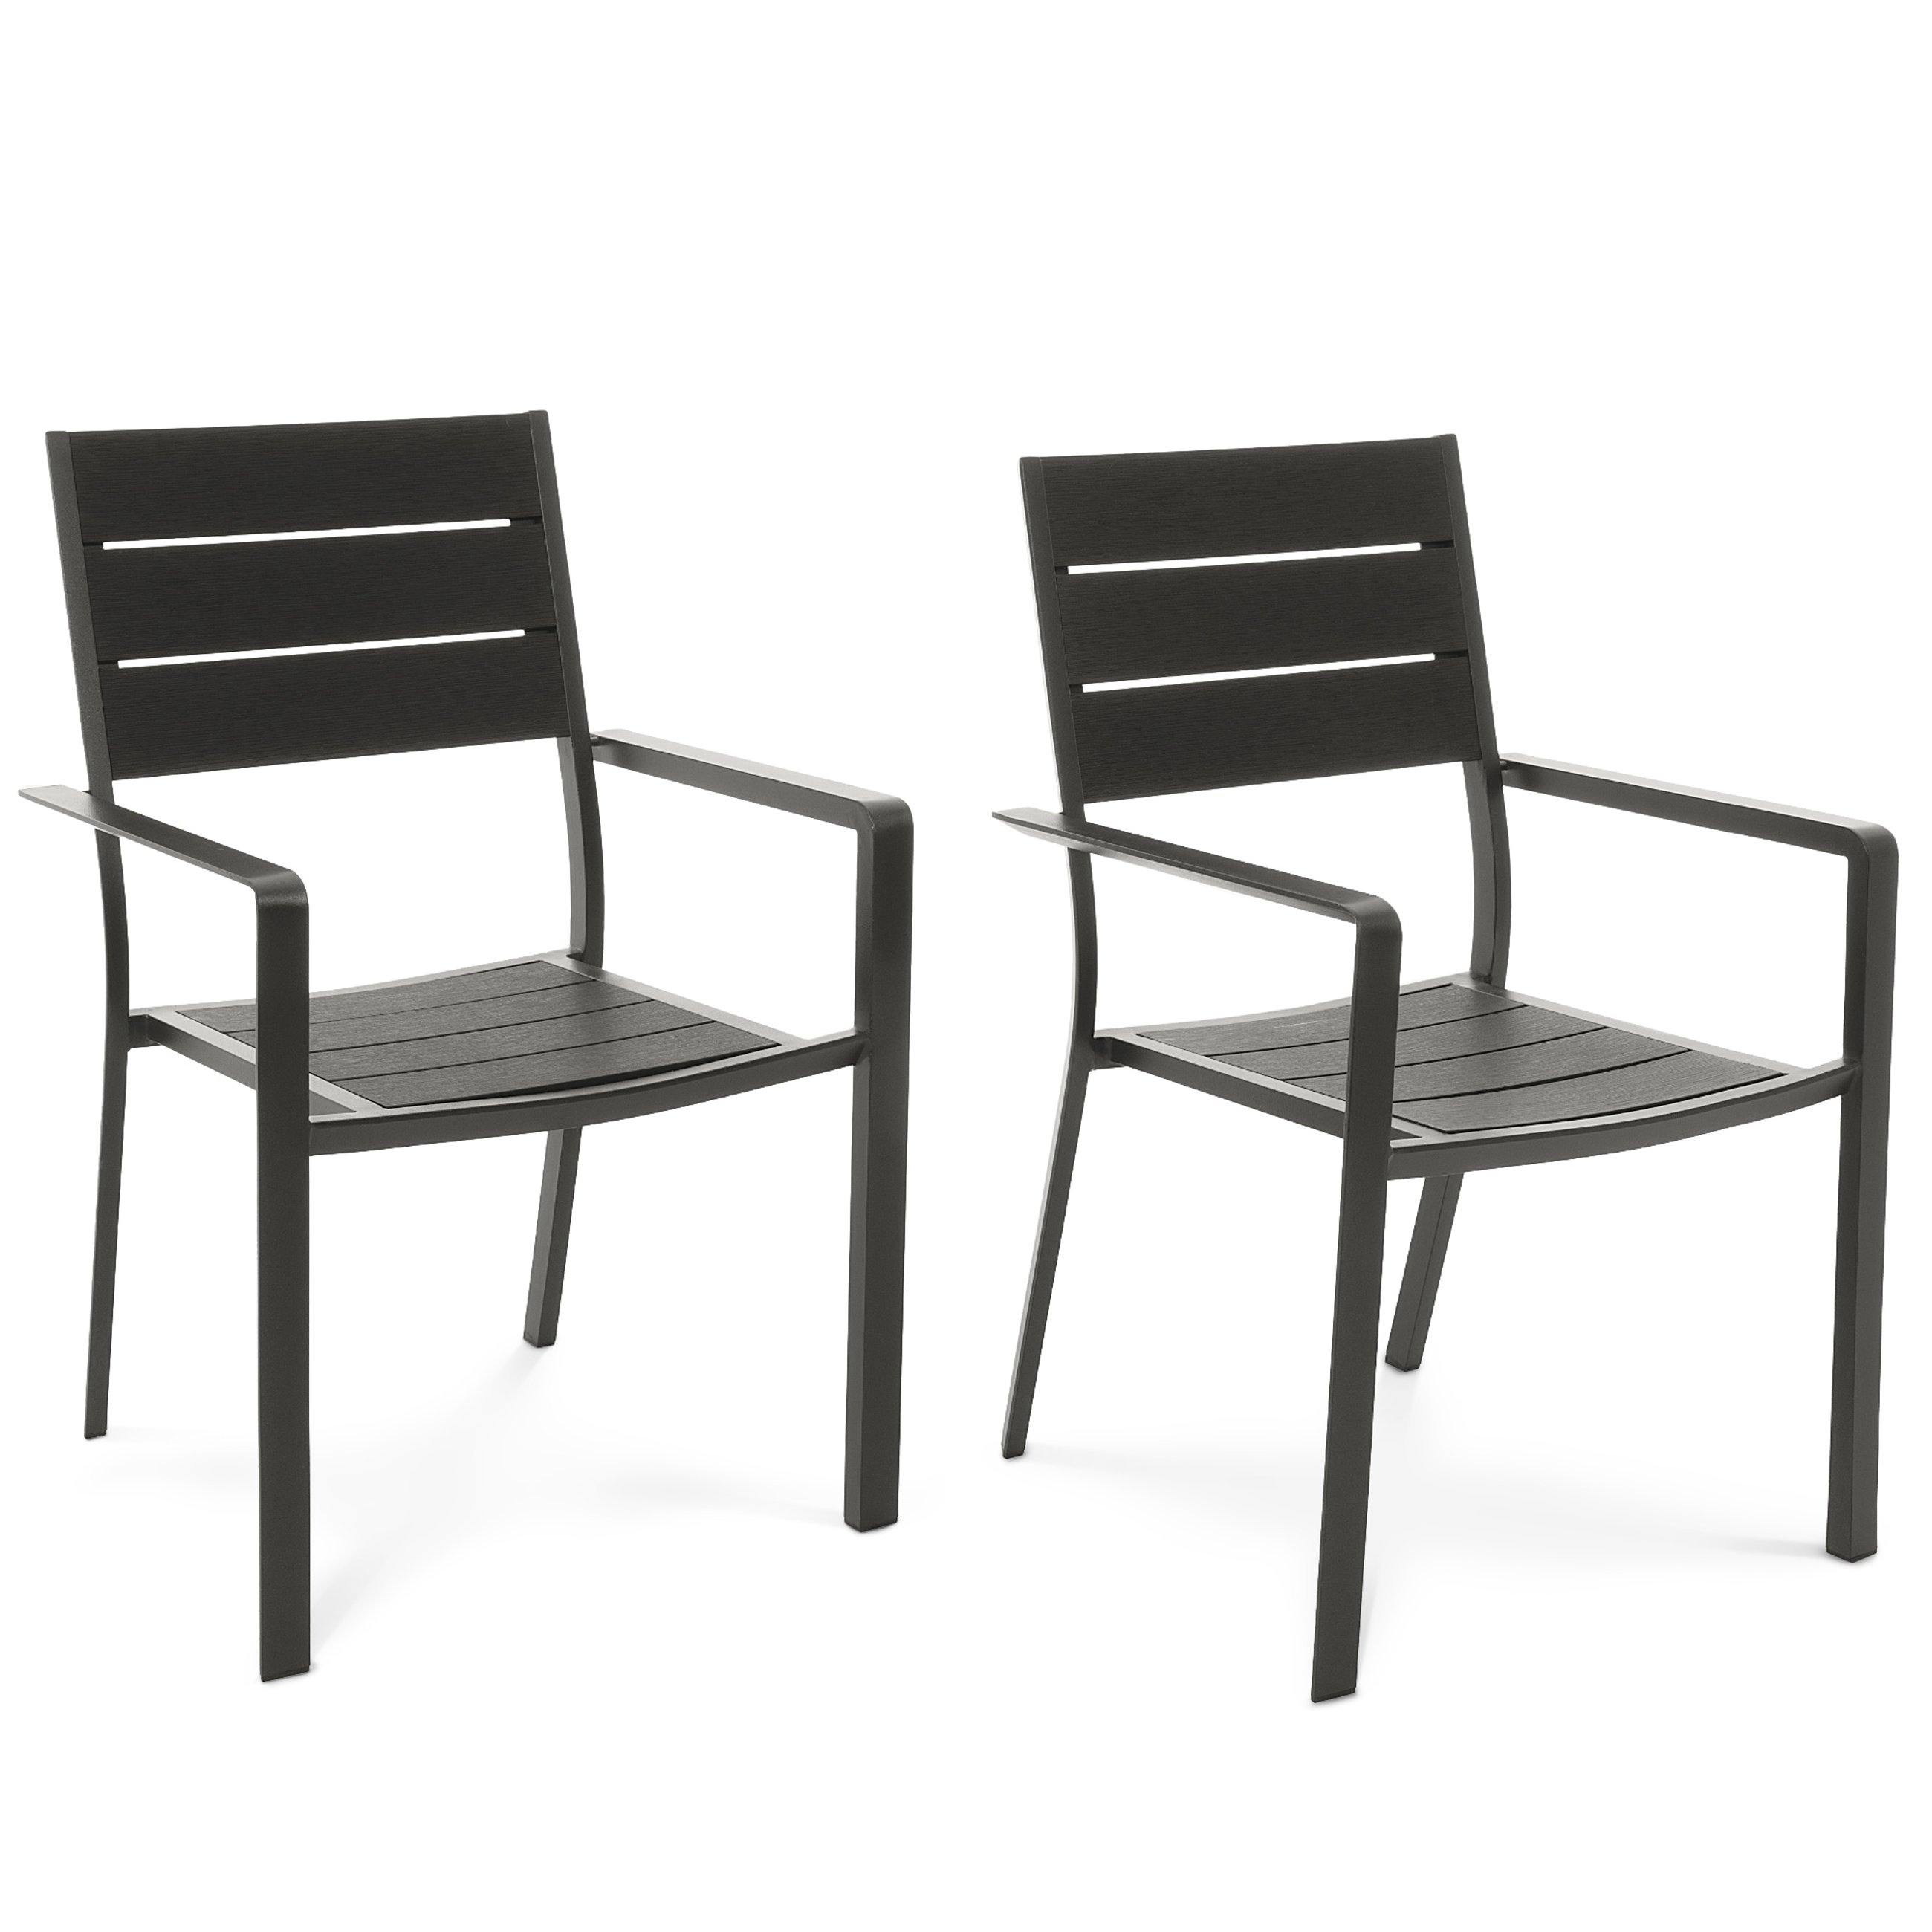 Rama krzeseł Teri wykonana z aluminium, pomalowana na głęboki, matowy czarny kolor